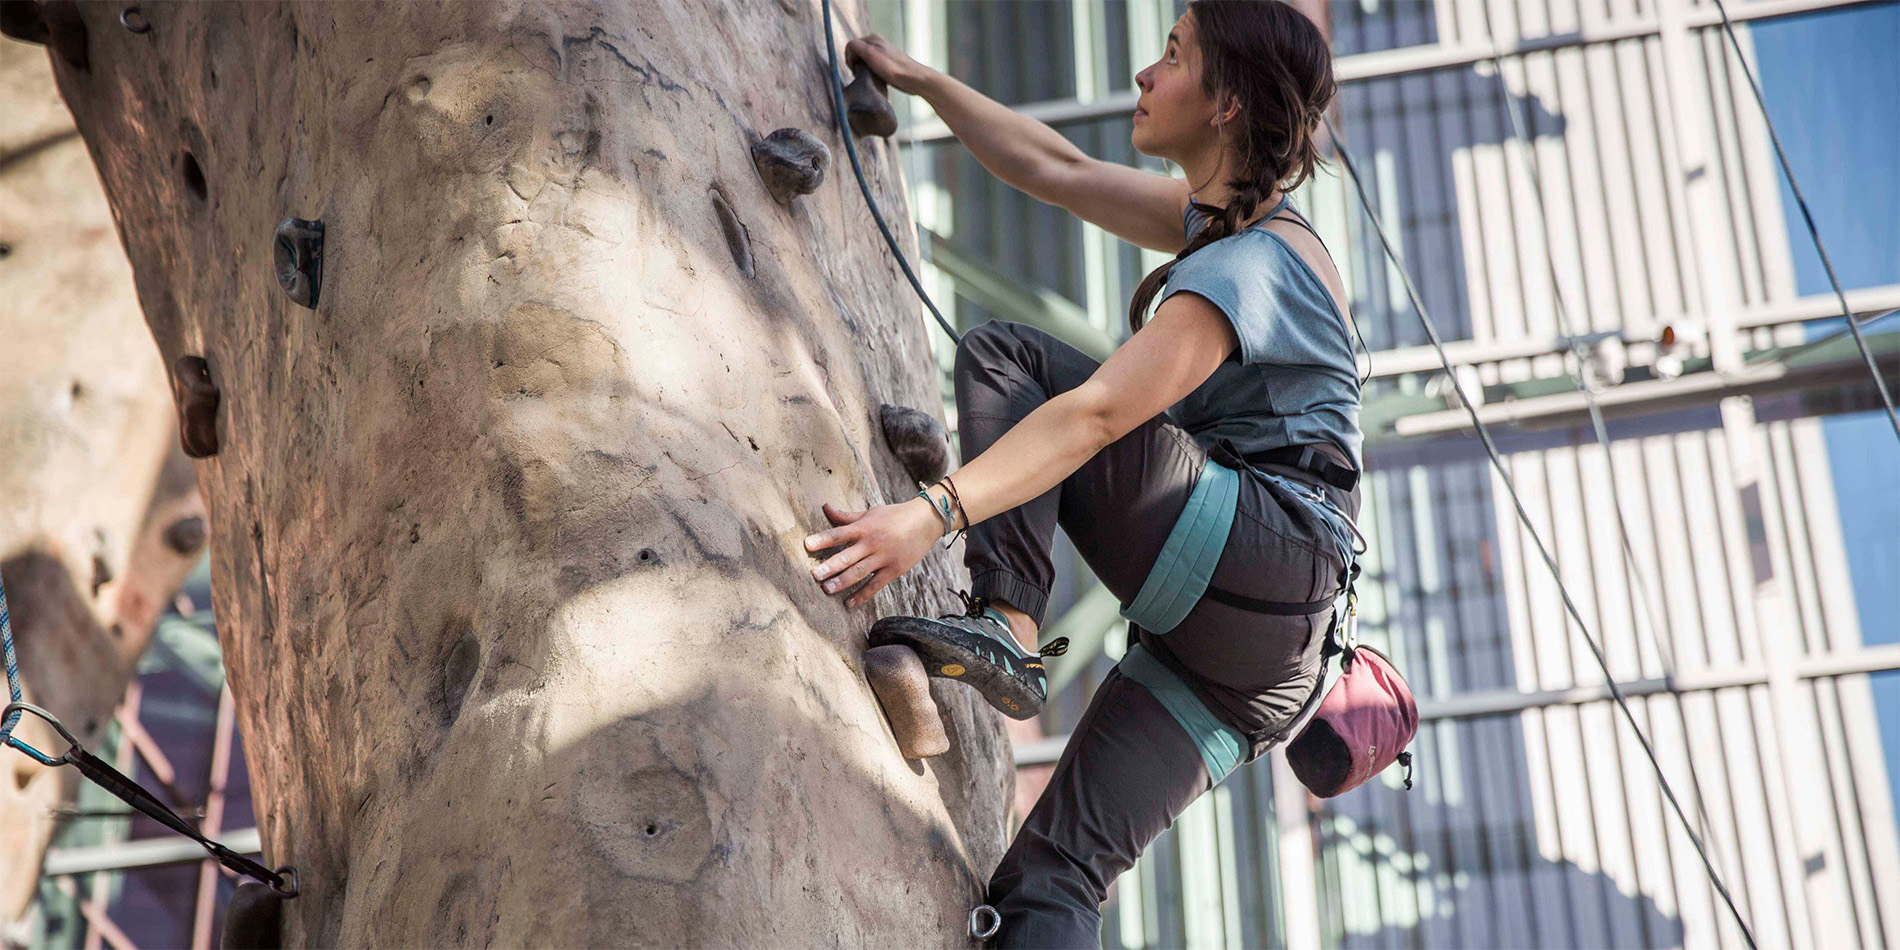 woman climbing rock wall